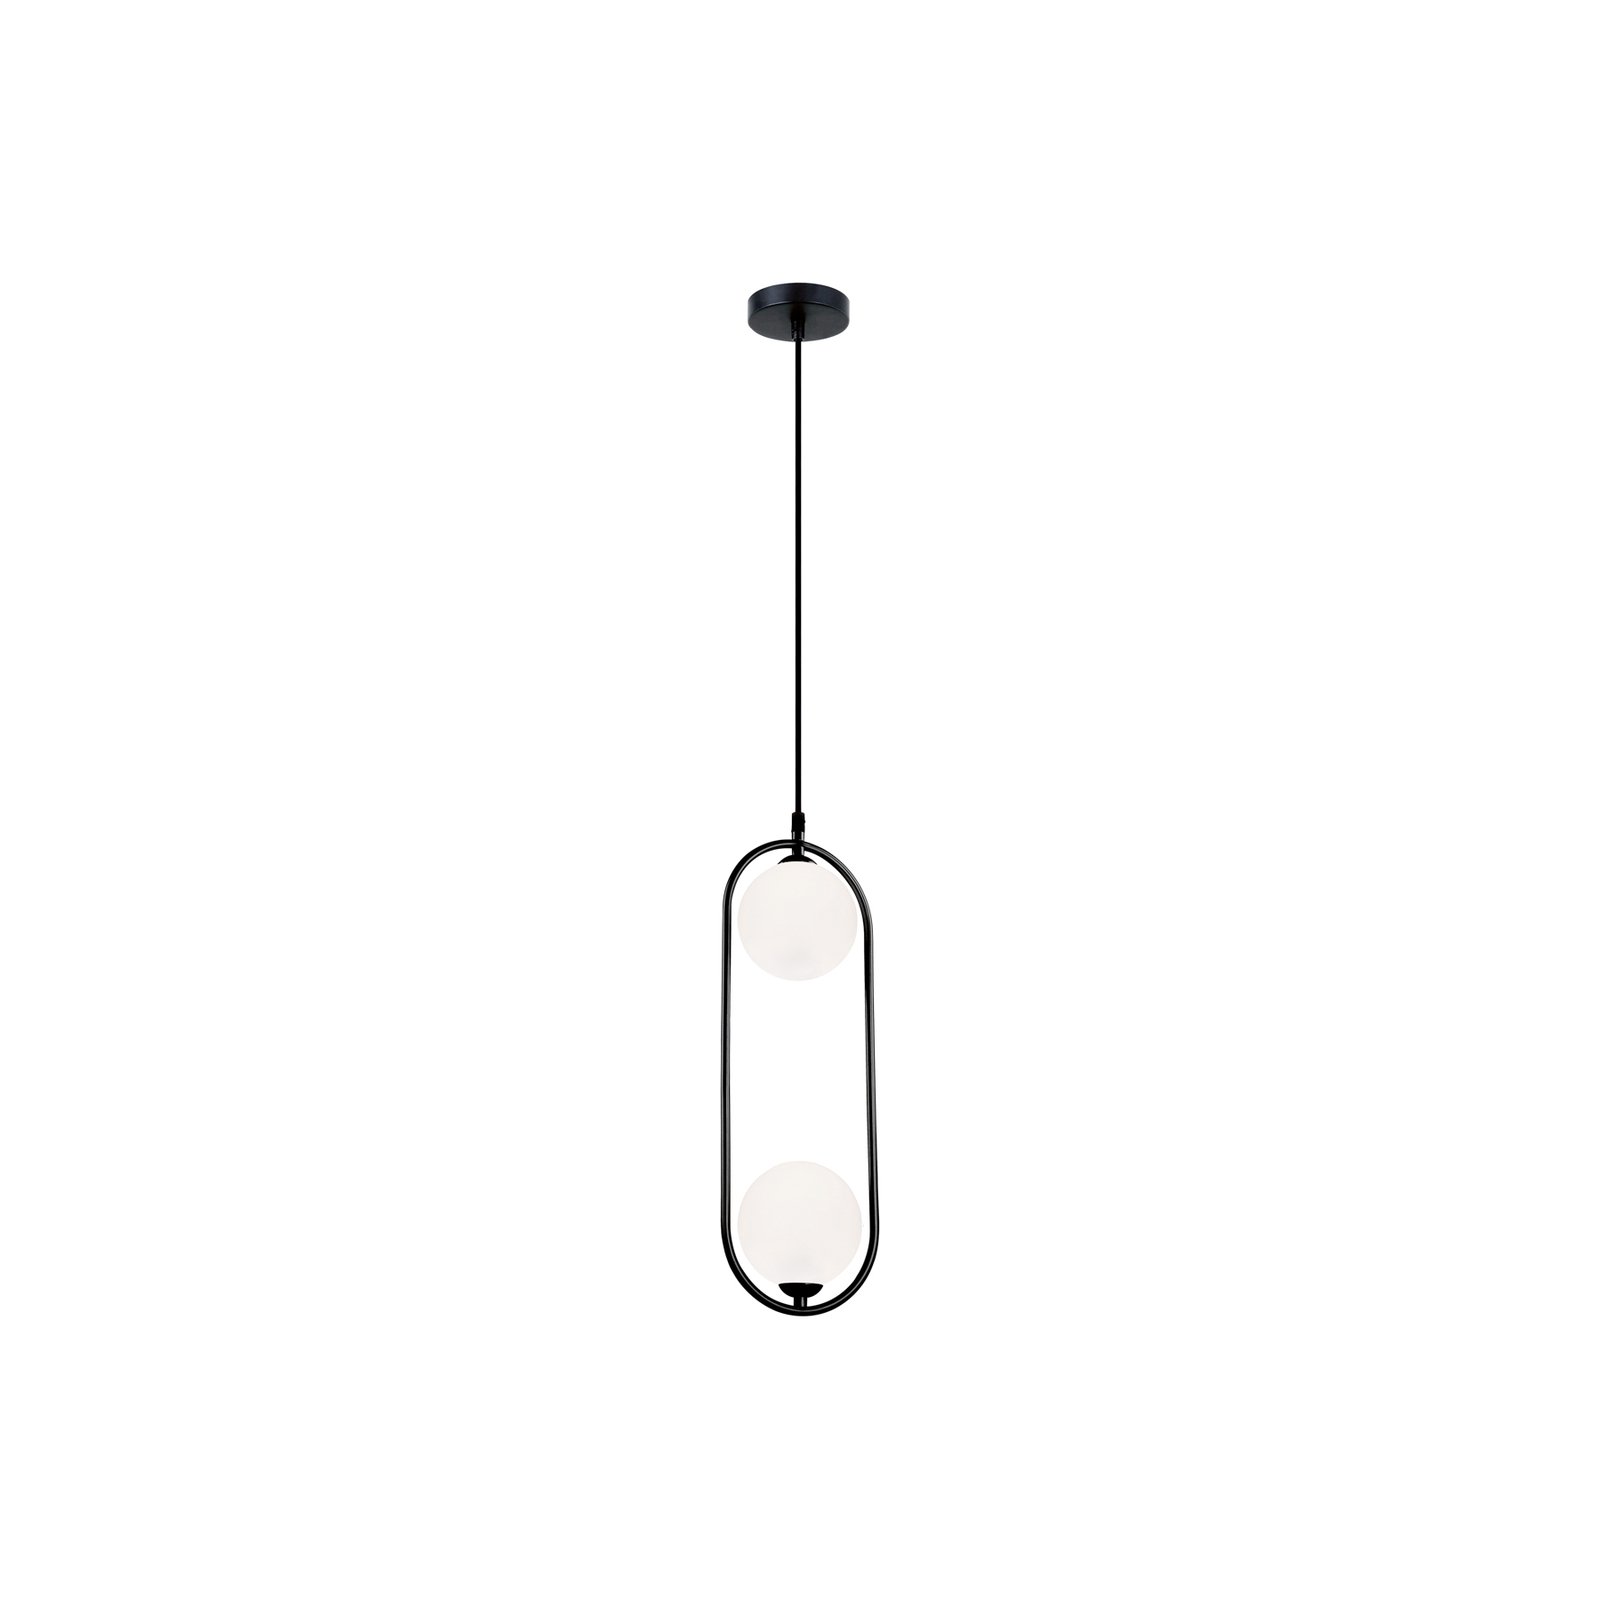 Fancy pendant light, 2-bulb, black